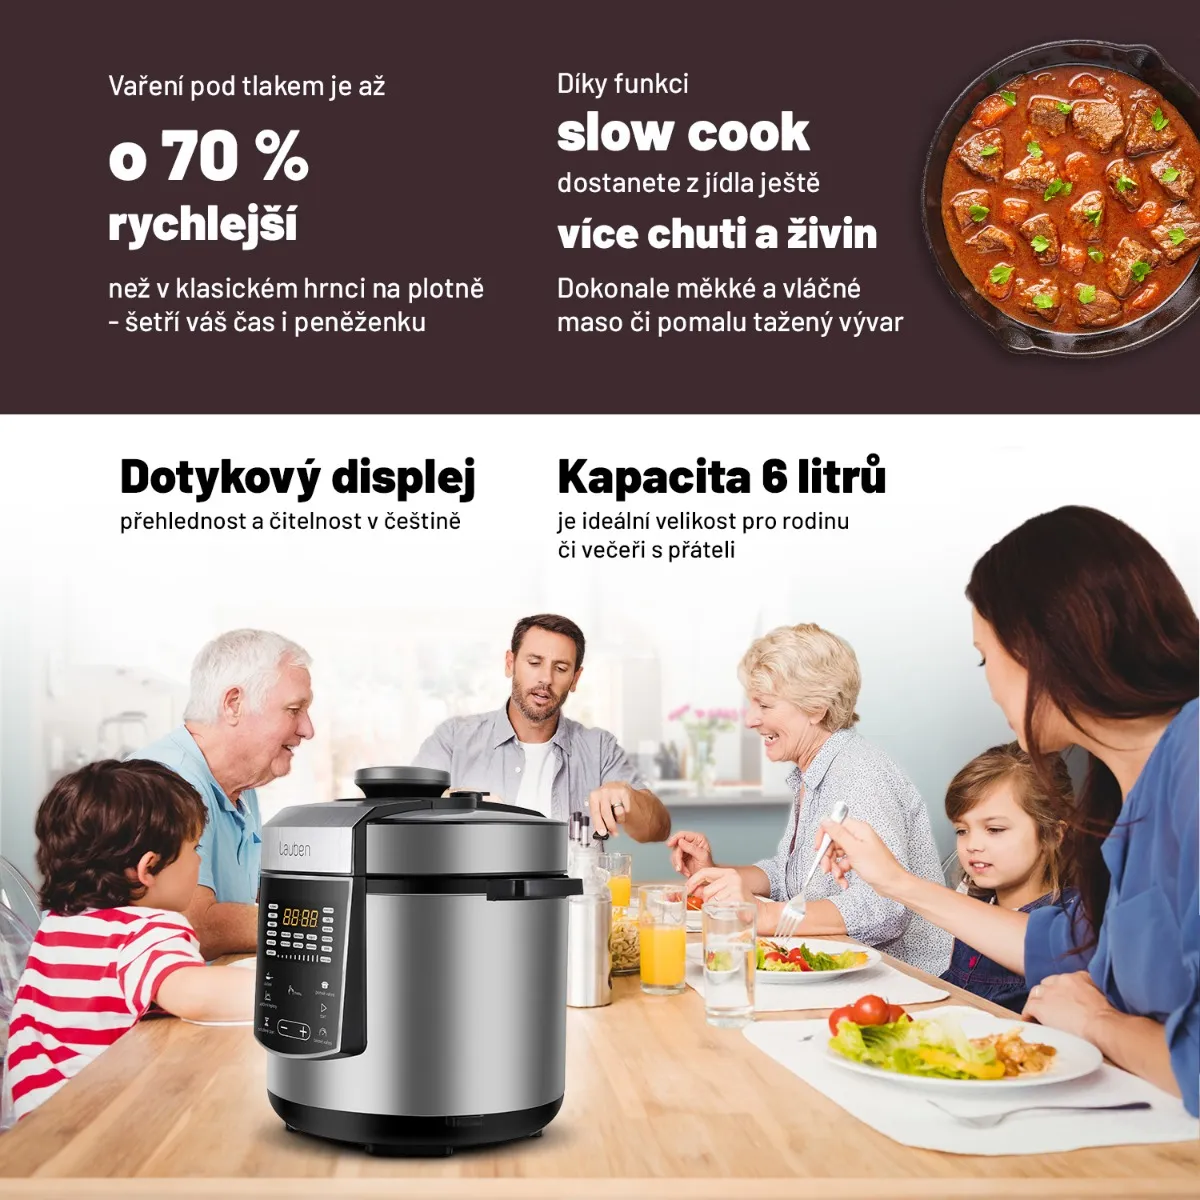 Lauben Multi Cooker 18SB Czech Edition multifunkční tlakový hrnec